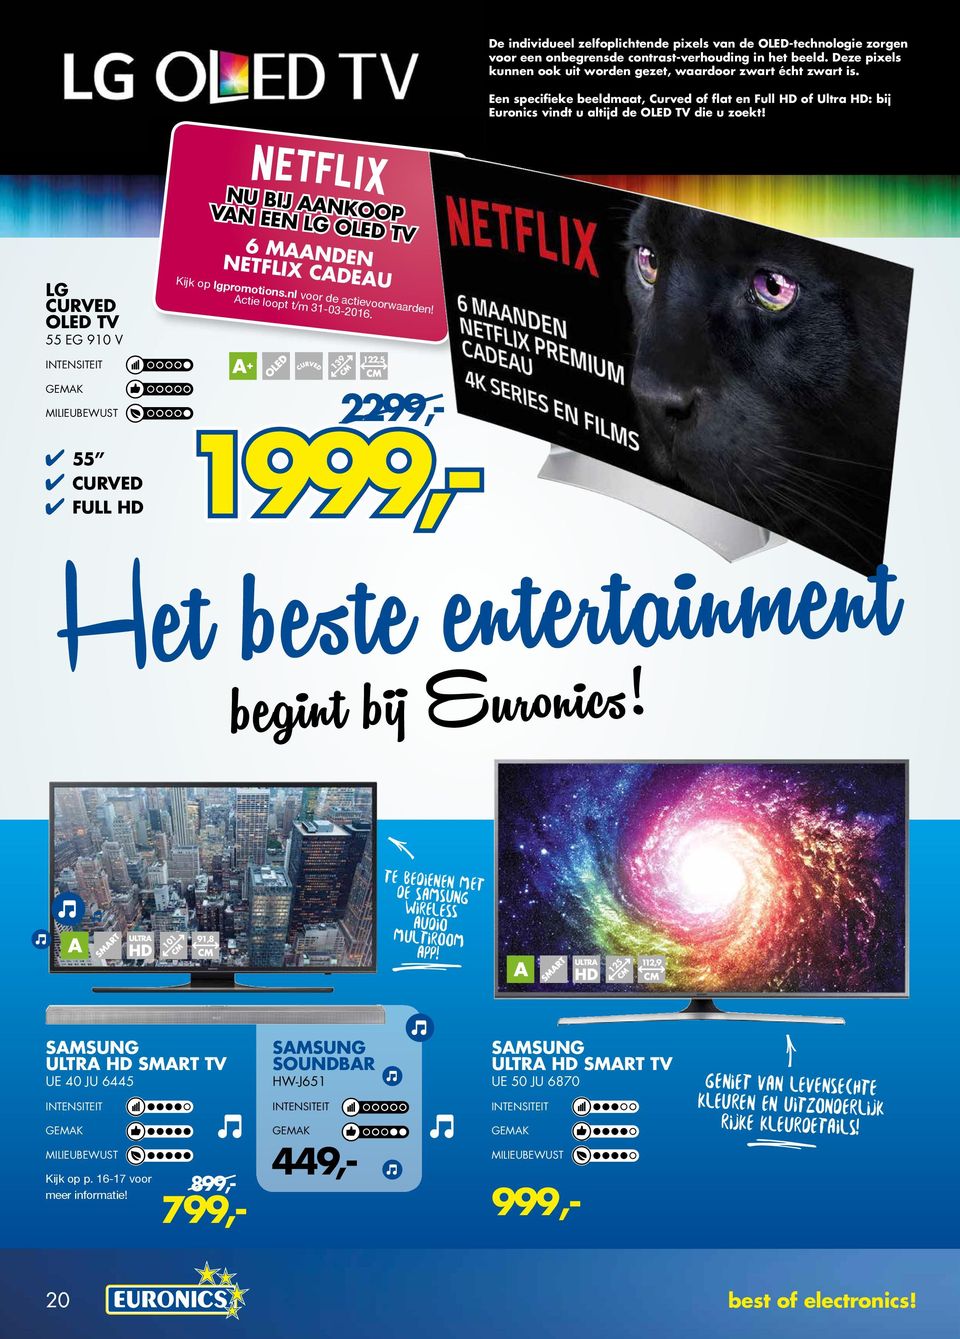 LG CURVED OLED TV 55 EG 910 V 55 CURVED FULL HD NU BIJ AANKOOP VAN EEN LG OLED TV 6 MAANDEN NETFLIX CADEAU Kijk op lgpromotions.nl voor de actievoorwaarden! Actie loopt t/m 31-03-2016.